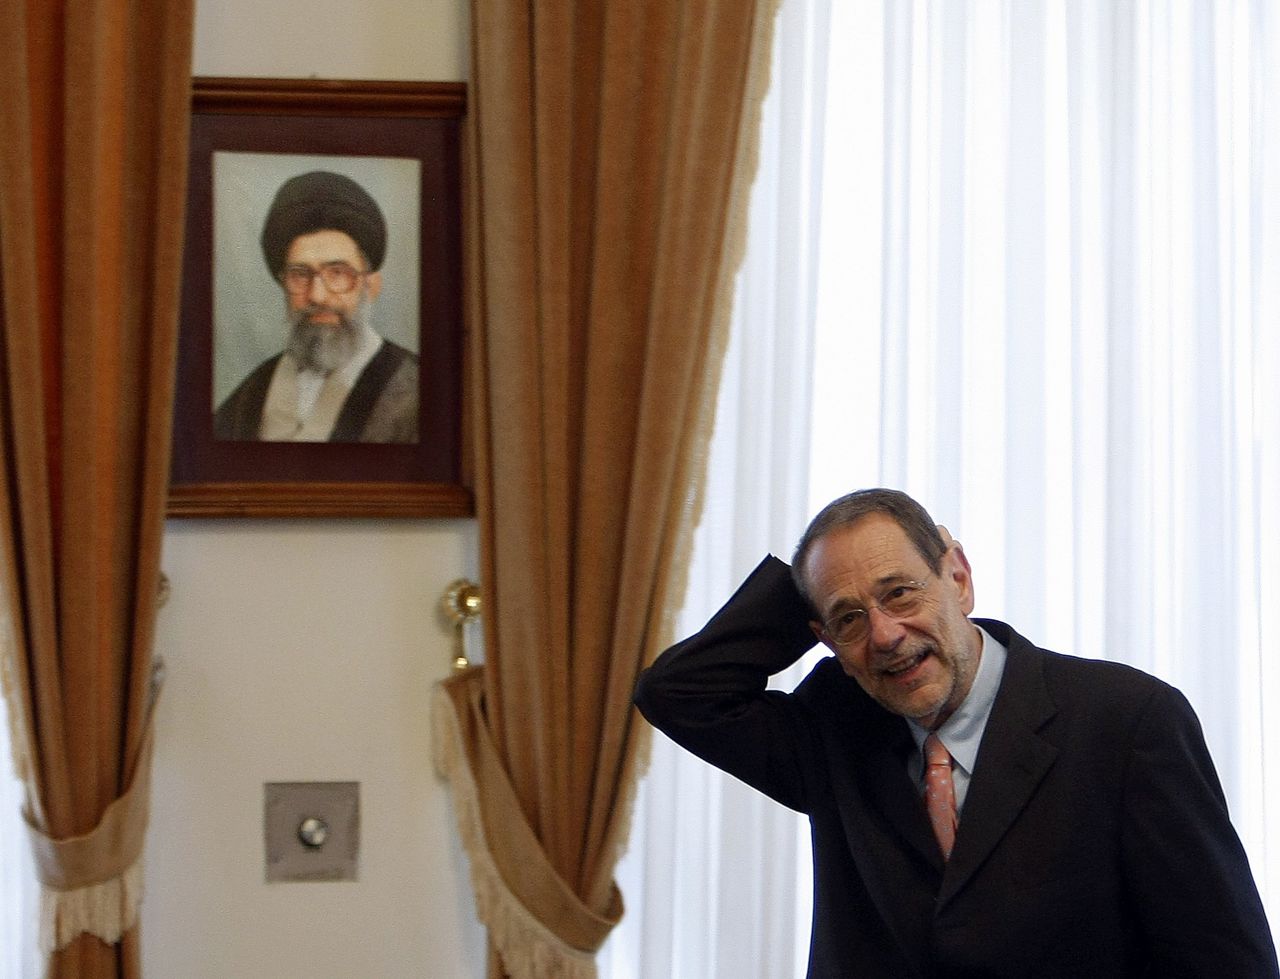 Voormalig Europees Hoge Buitenlandvertegenwoordiger Javier Solana onder het portret van Ayatollah Ali khamenei, tijdens zijn ontmoeting met de Iraanse onderhandelaar over de Iran-deal Saeed Jalili in 2008.